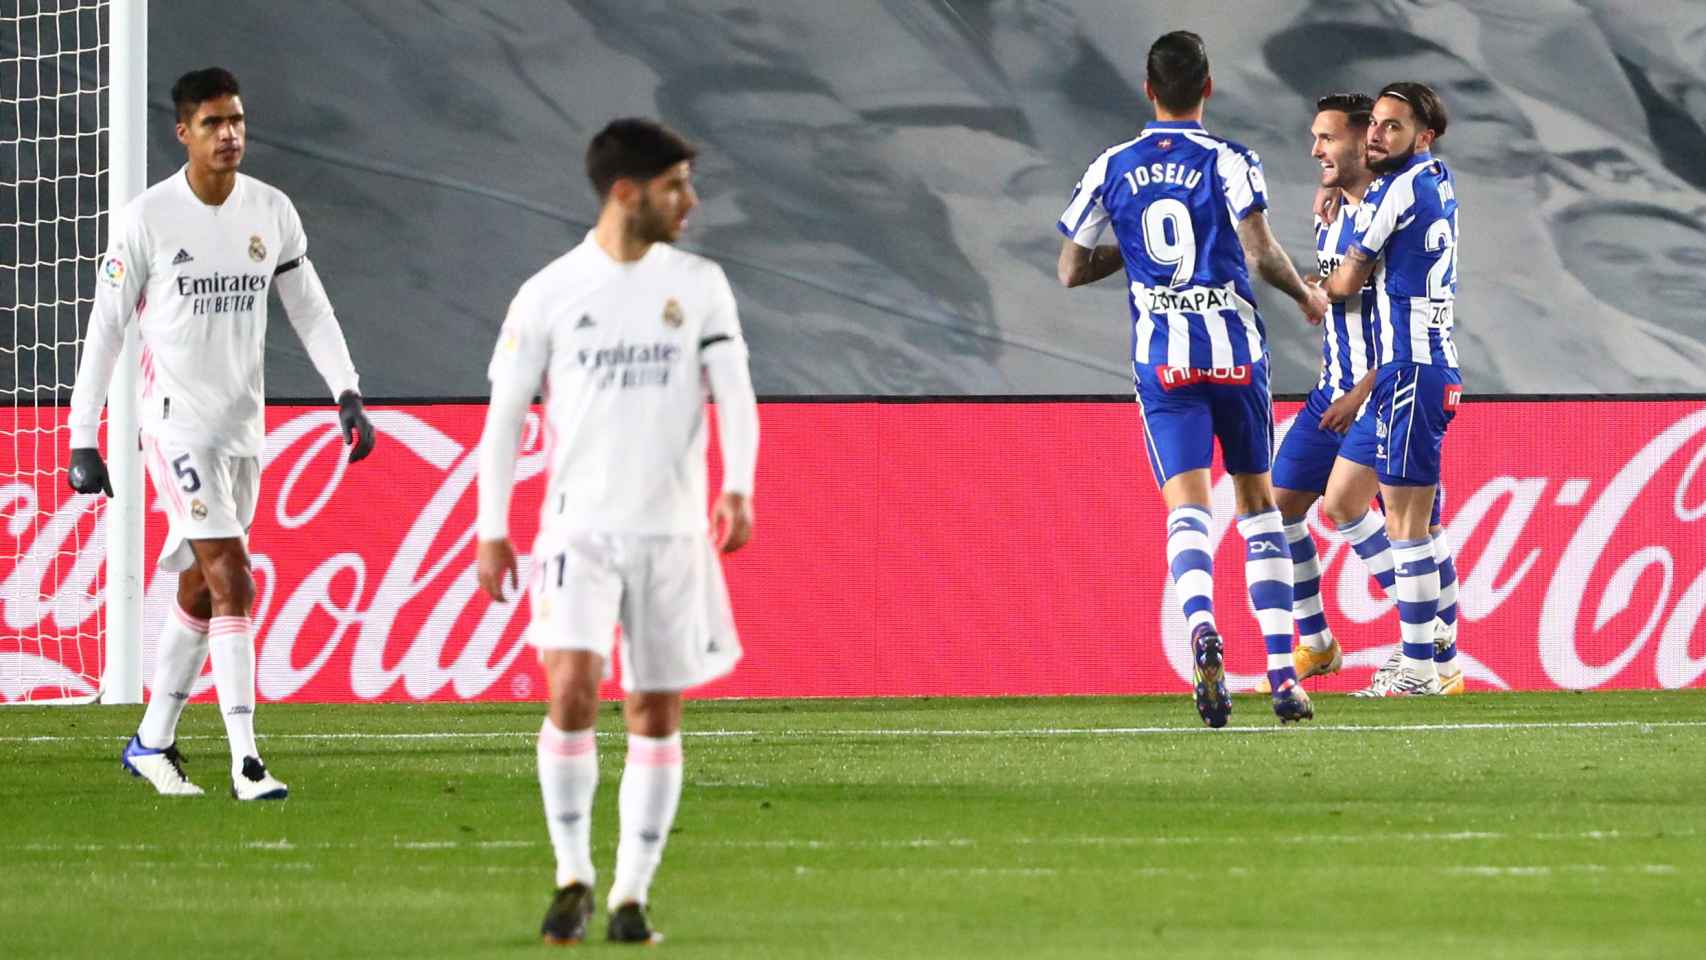 Los jugadores del Deportivo Alavés celebran el gol de Lucas Pérez